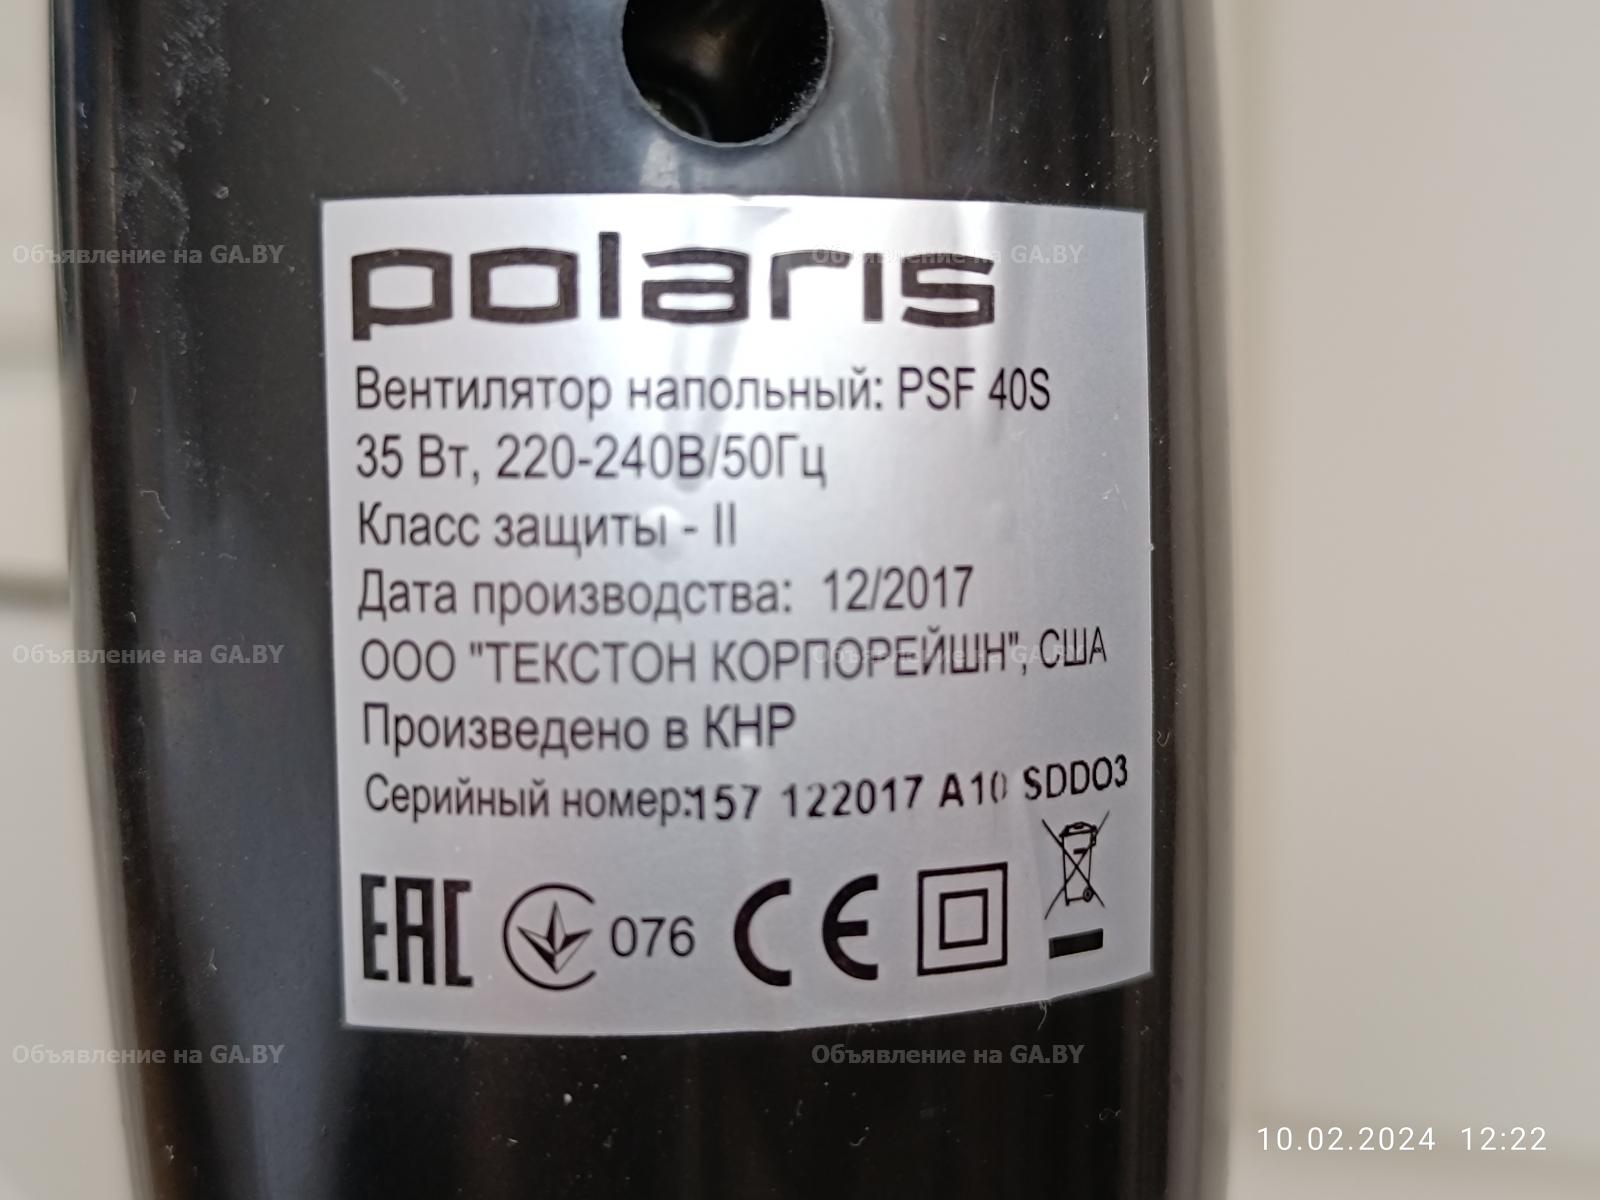 Продам Вентилятор напольный POLARIS PSF 40S.  - GA.BY